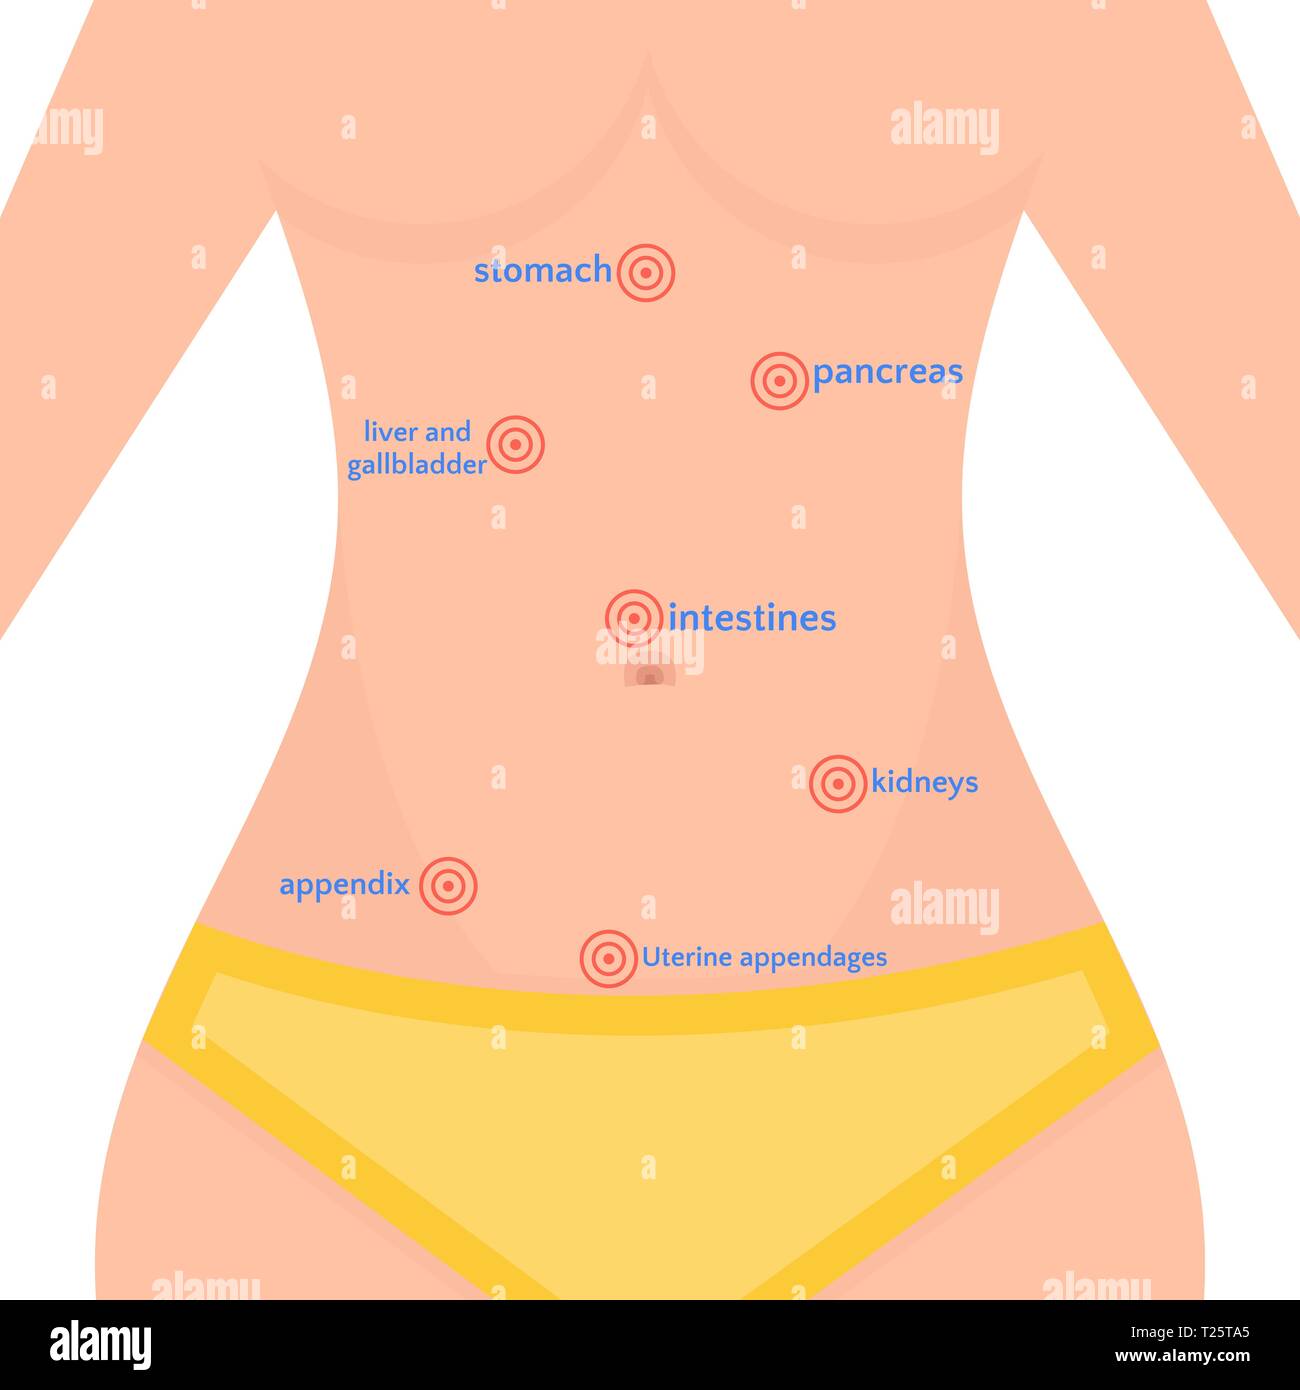 Arten von Abdominal- Schmerz in den Frauen, die Lage von Bali im menschlichen Körper, Gesundheit der Frau Vector Illustration Stock Vektor